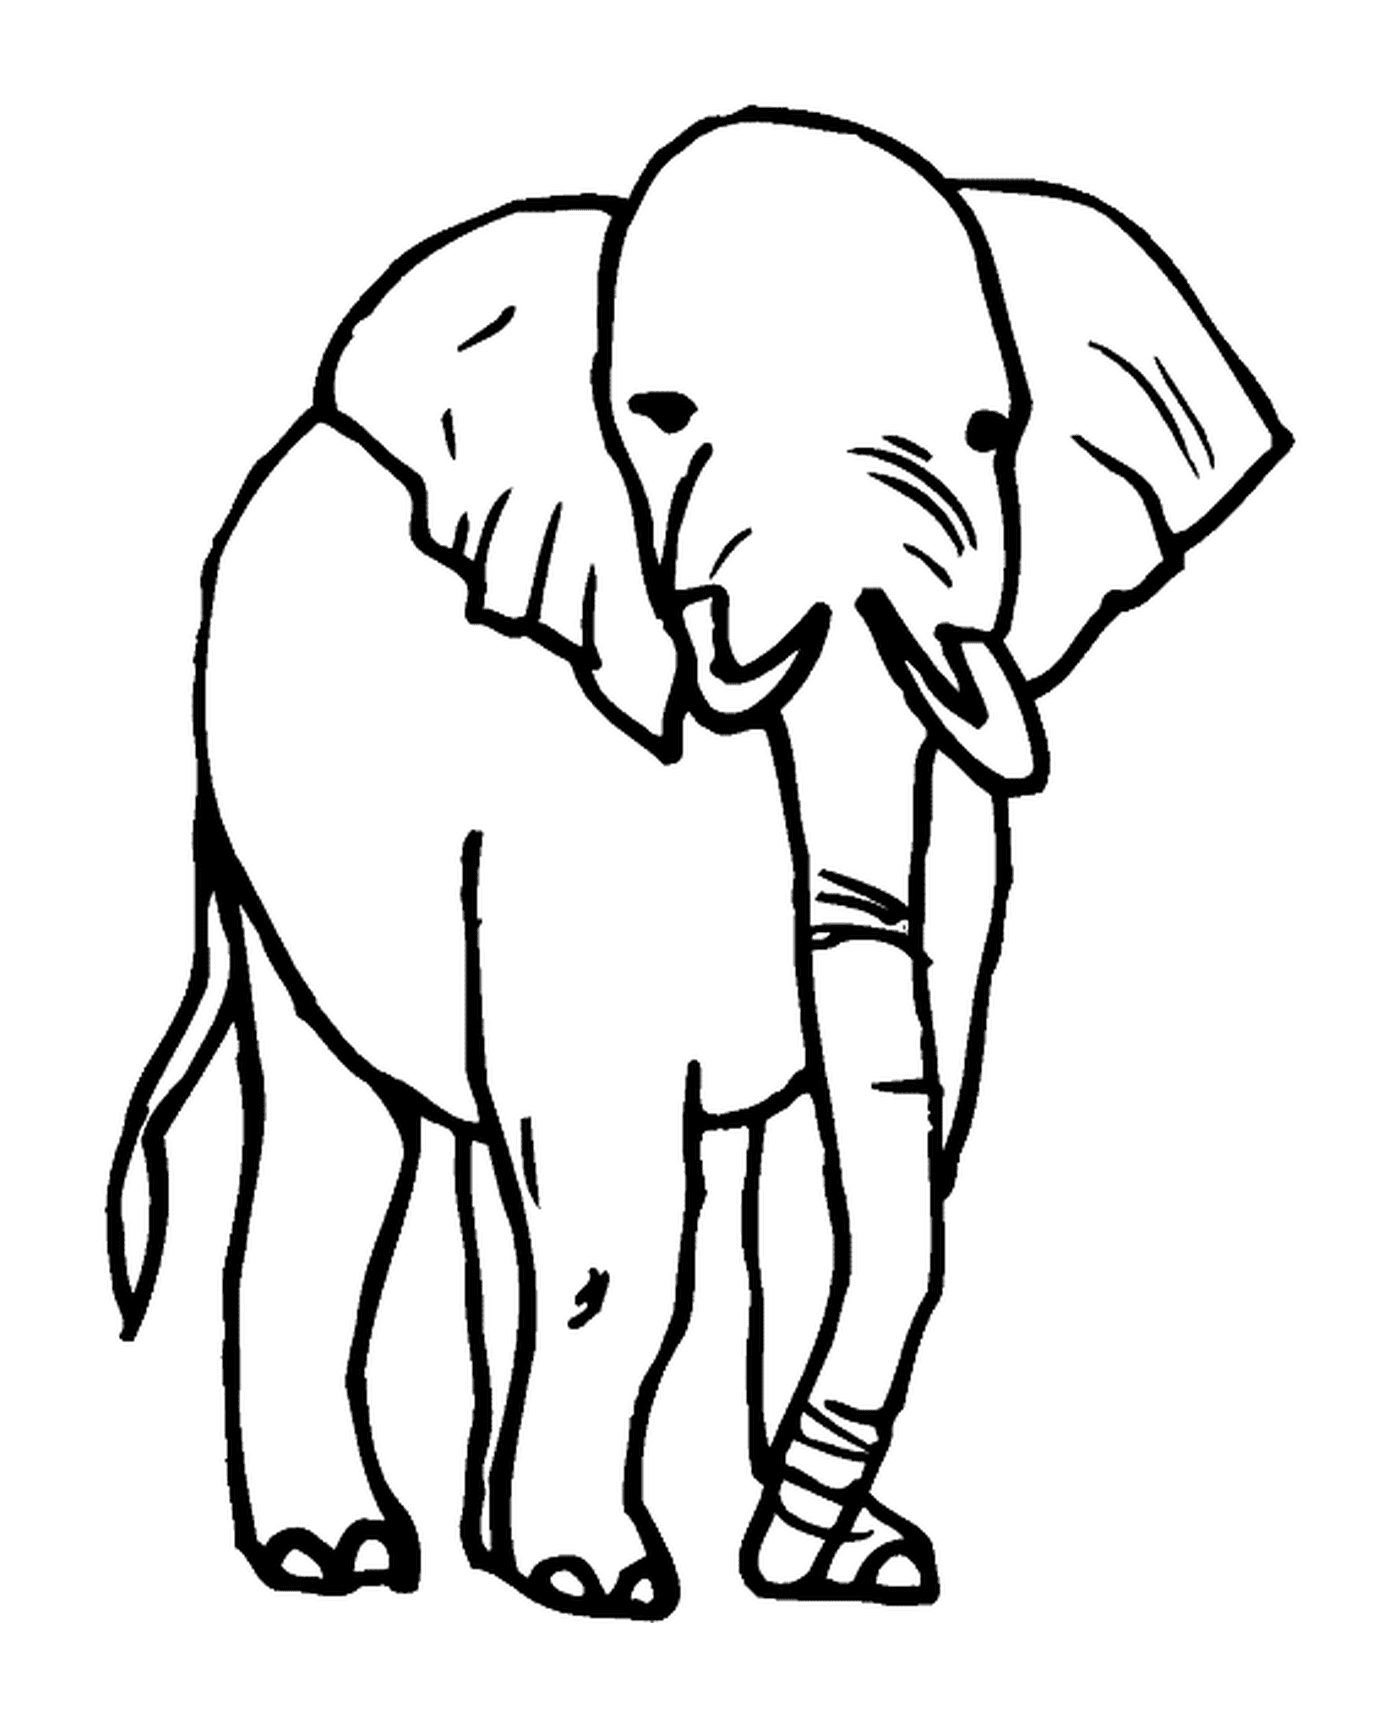  大象绘图 